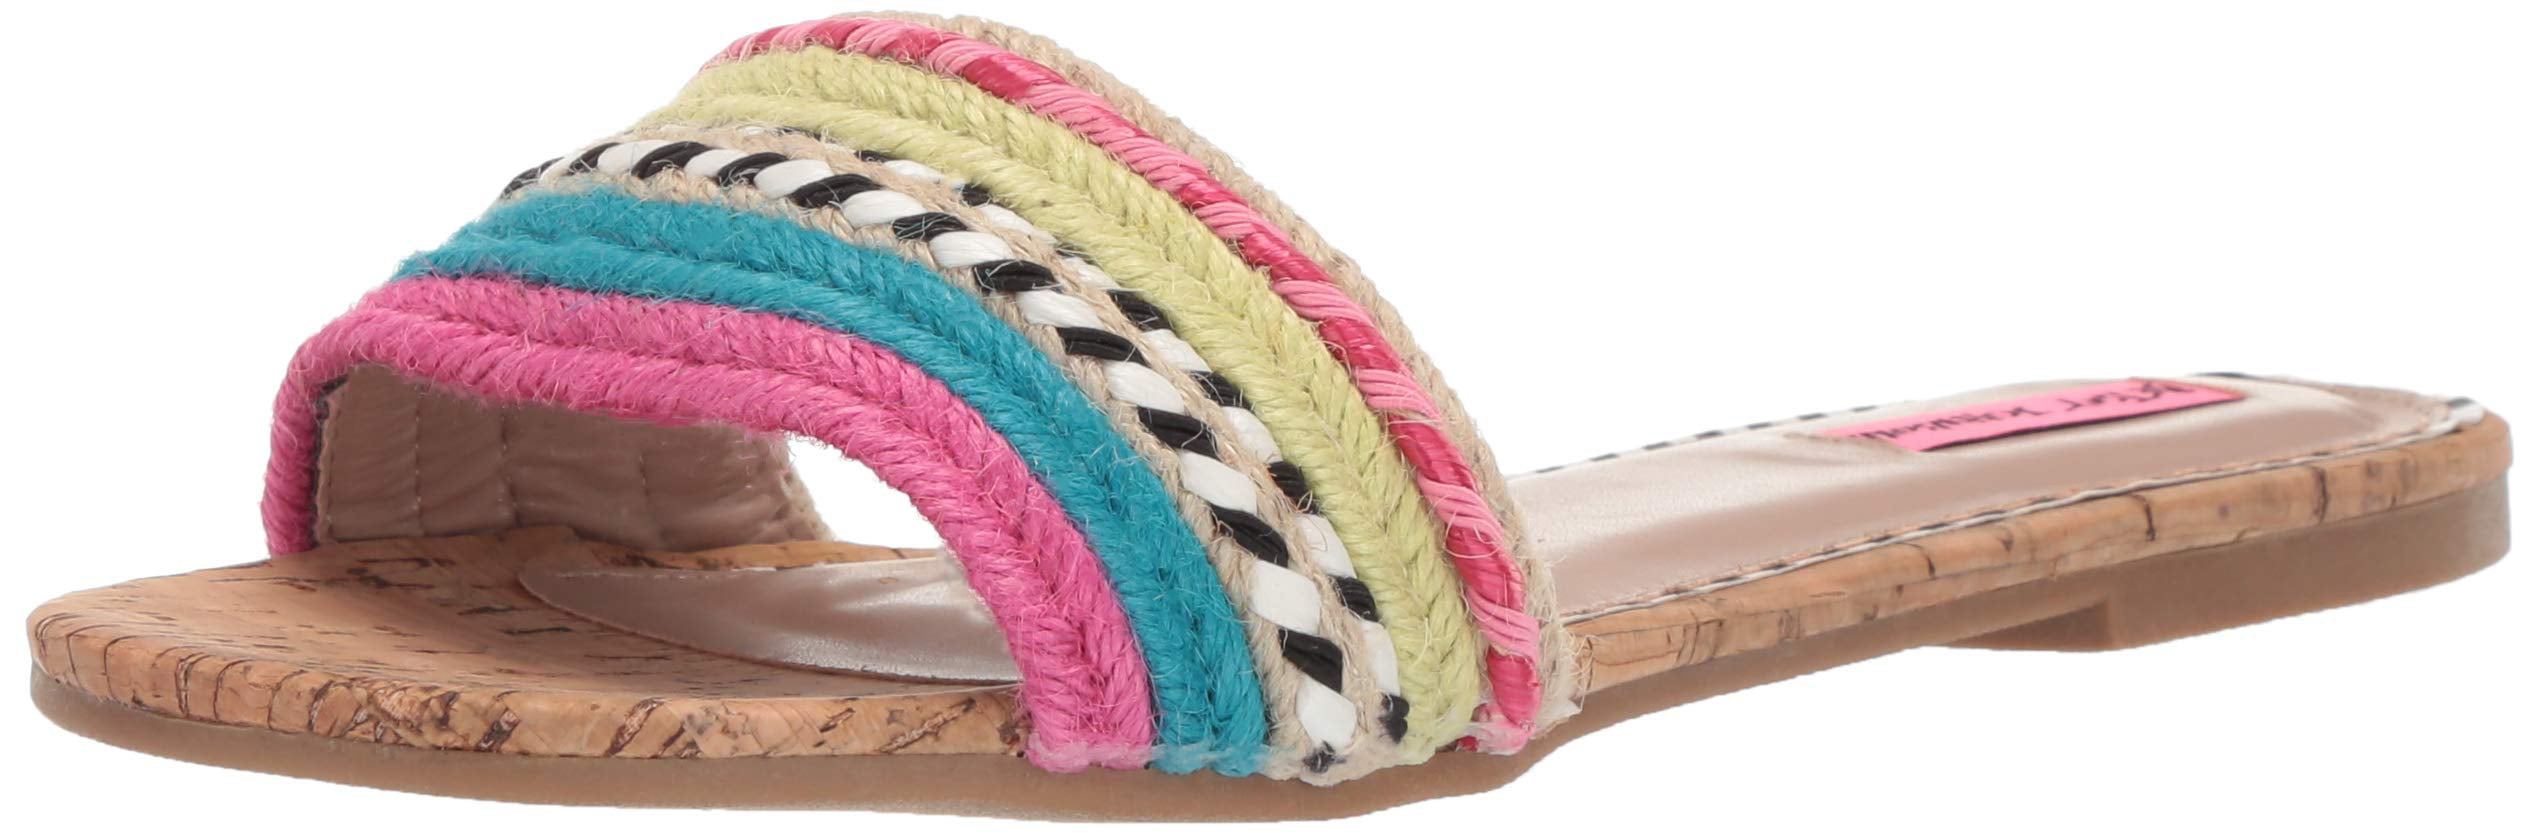 multi colored sandals